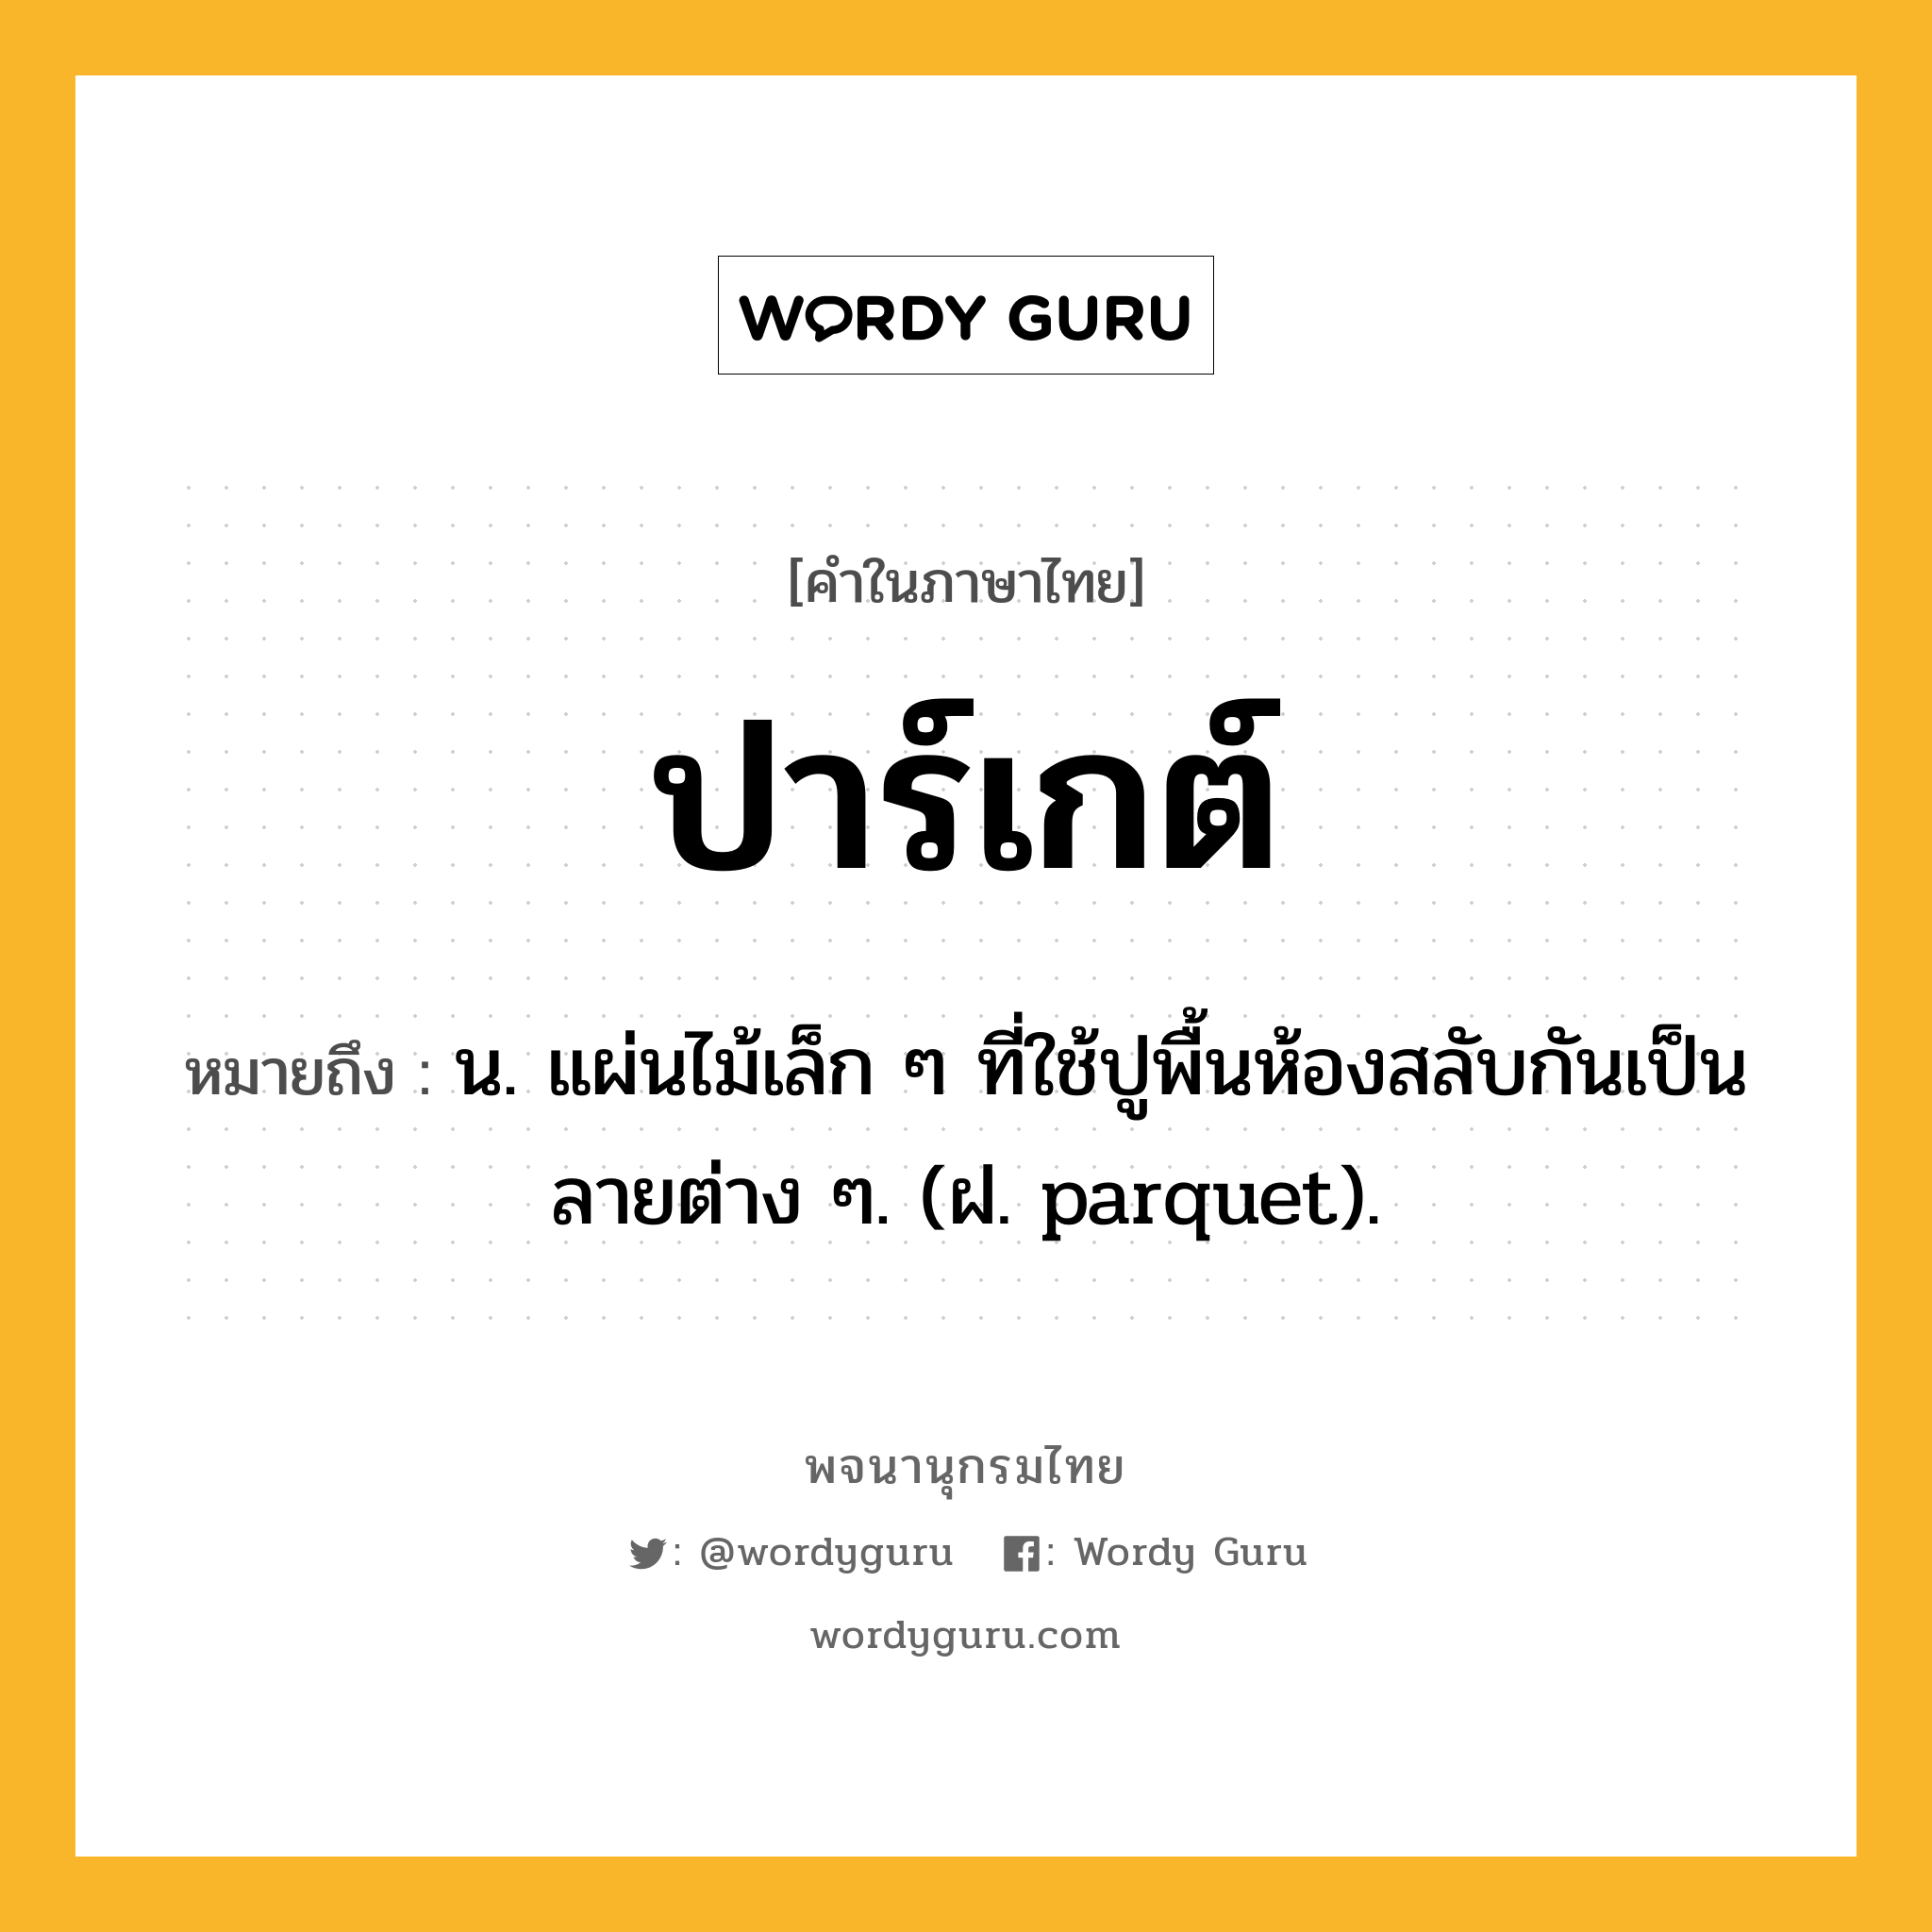 ปาร์เกต์ หมายถึงอะไร?, คำในภาษาไทย ปาร์เกต์ หมายถึง น. แผ่นไม้เล็ก ๆ ที่ใช้ปูพื้นห้องสลับกันเป็นลายต่าง ๆ. (ฝ. parquet).